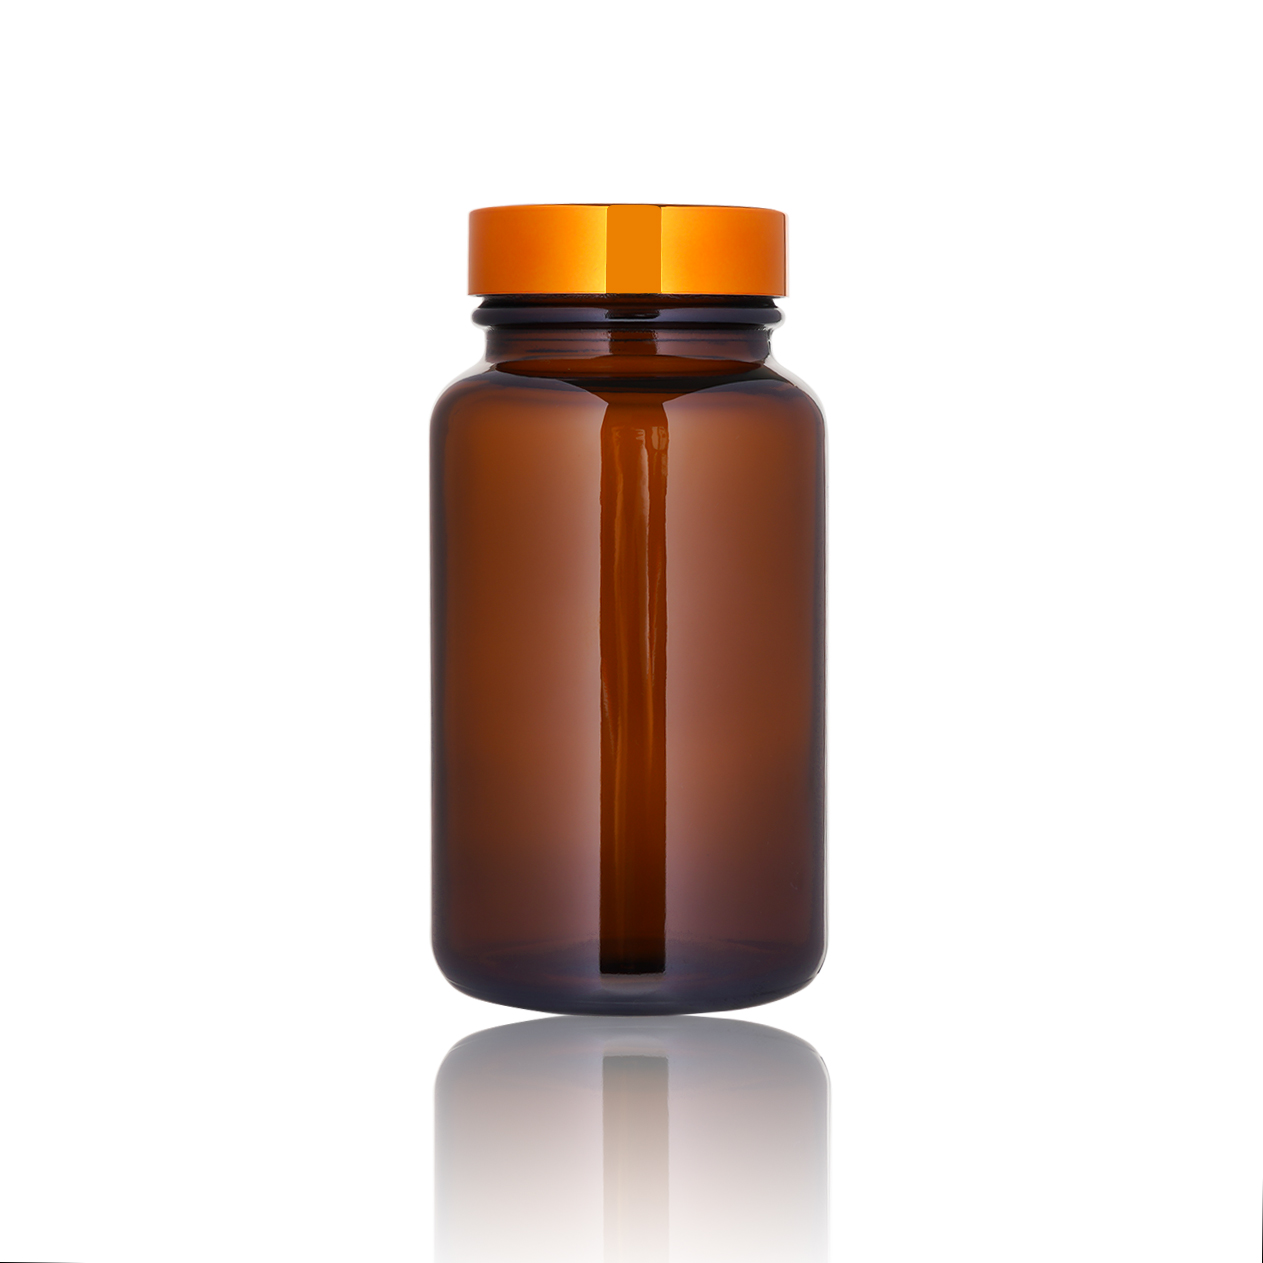 Amber Vitamin Glass Medicine Container